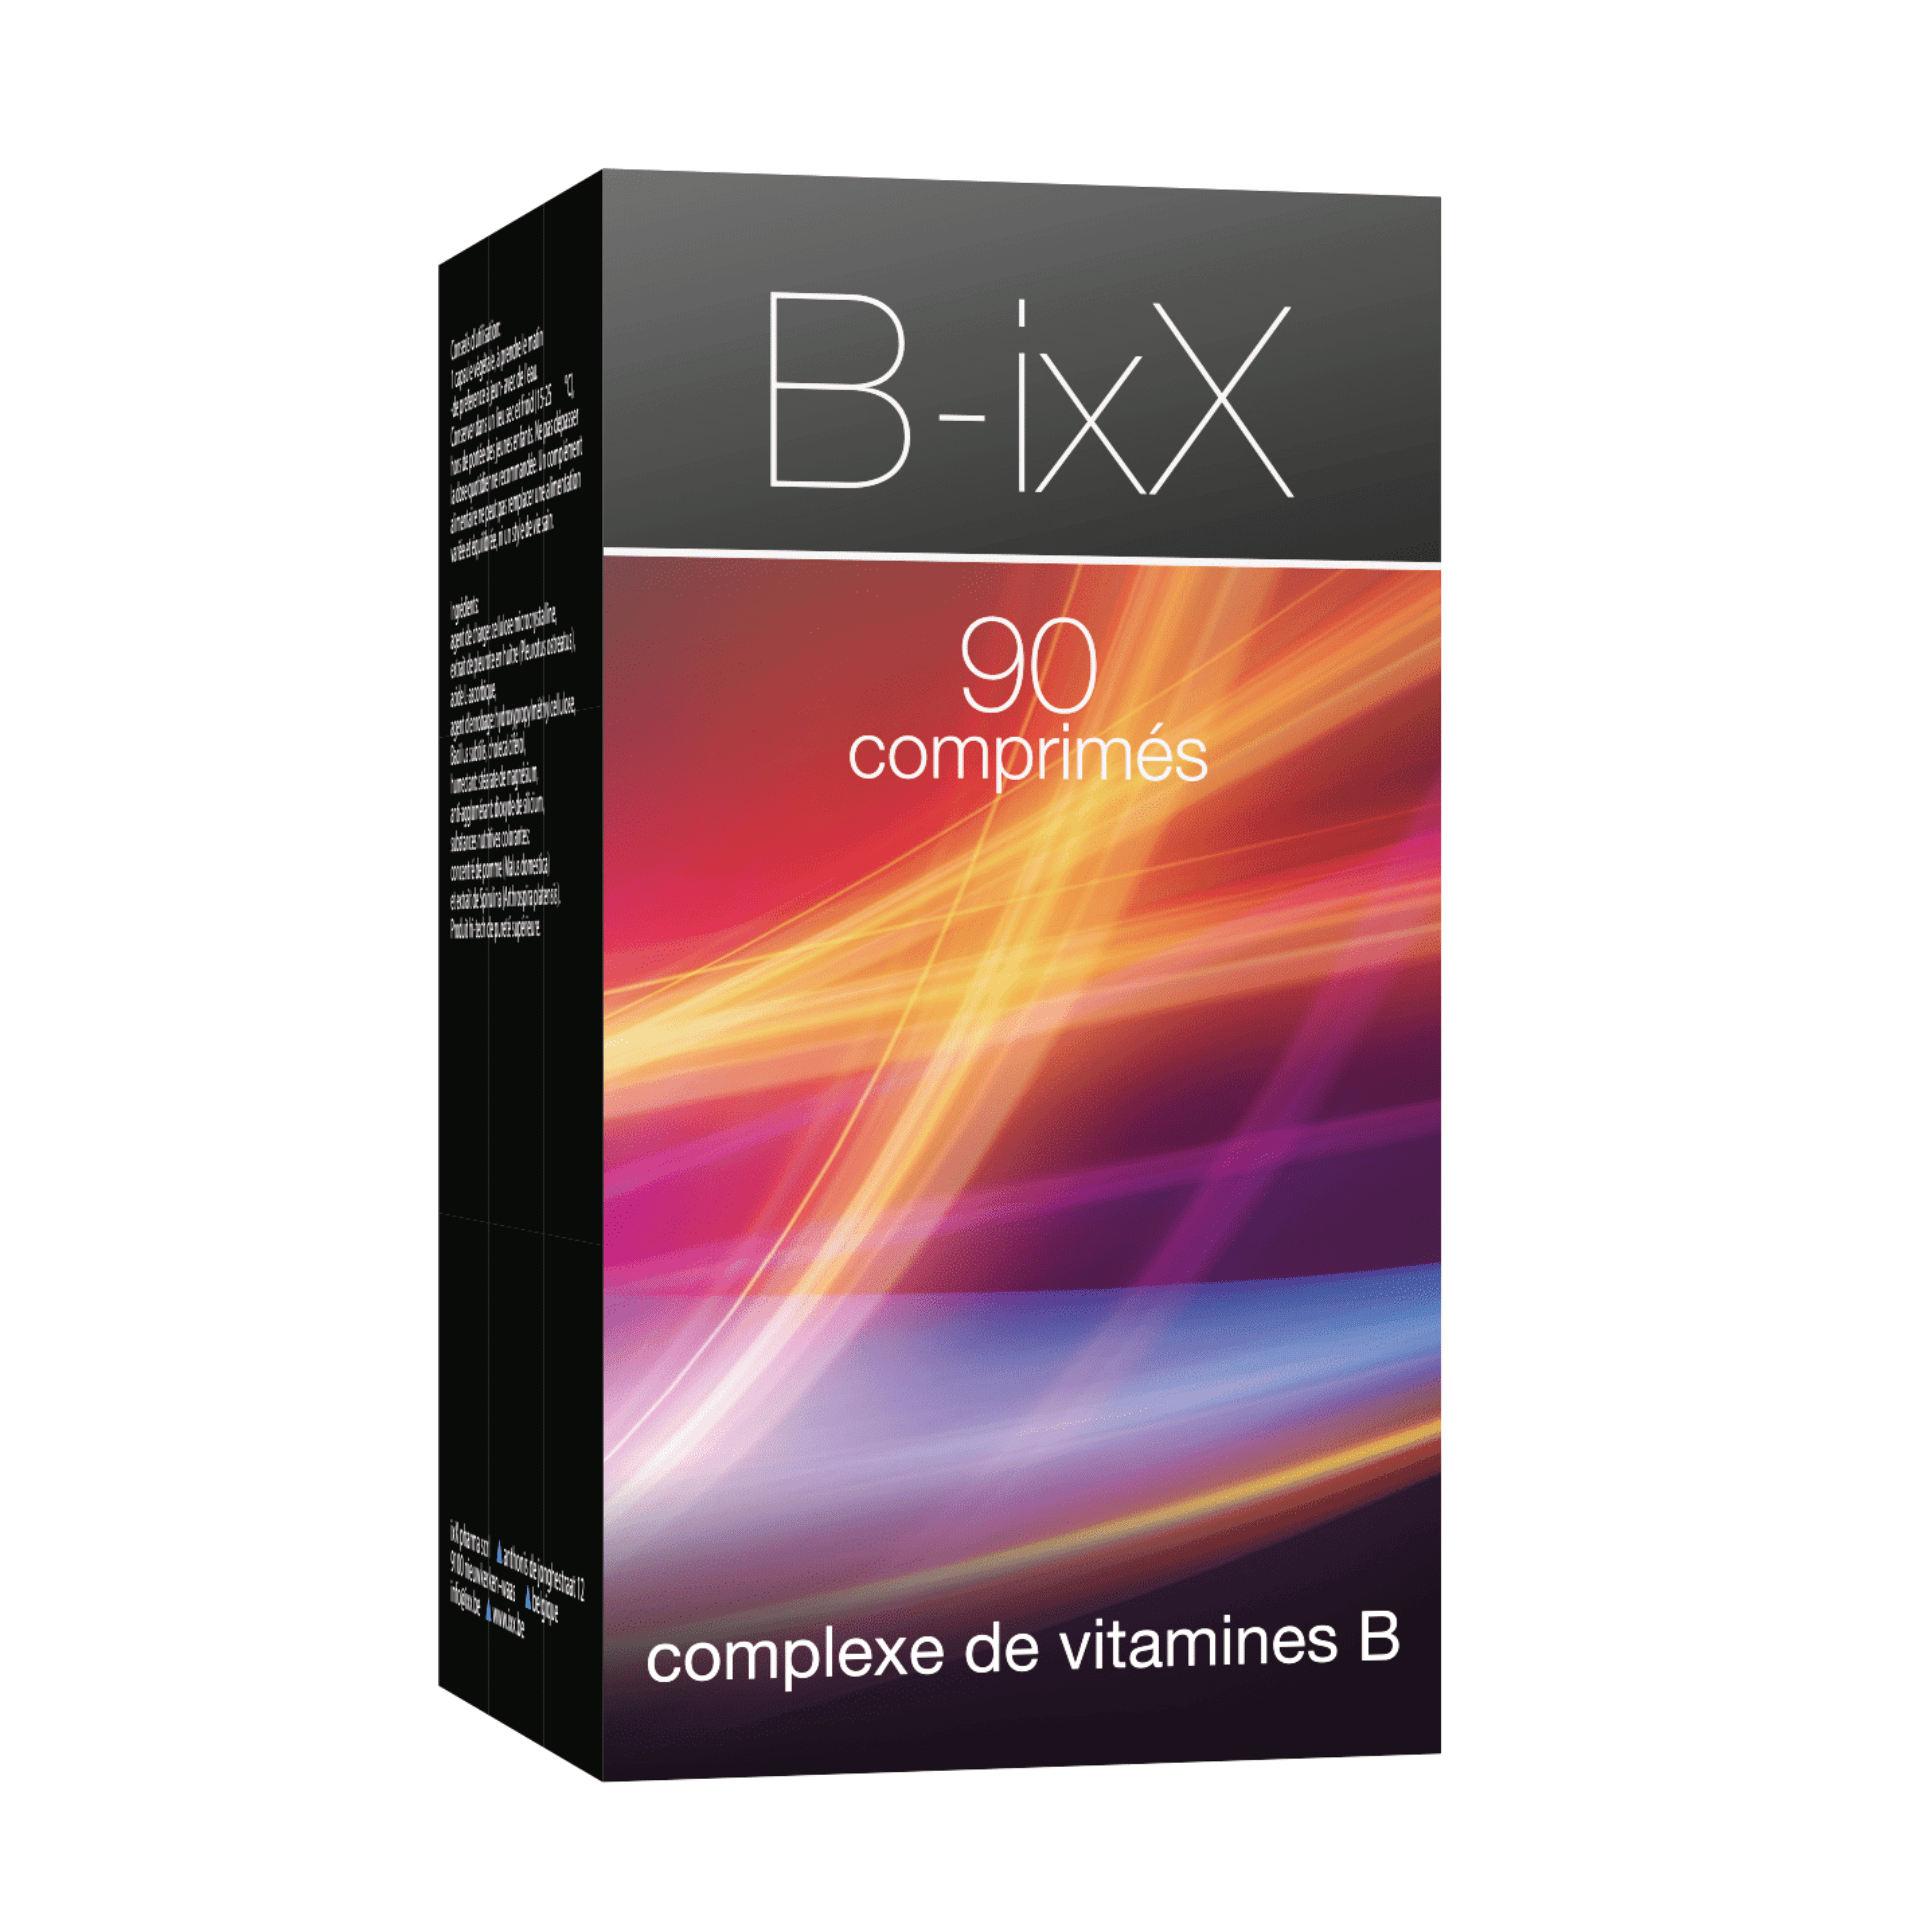 B-ixX 90 comprimés